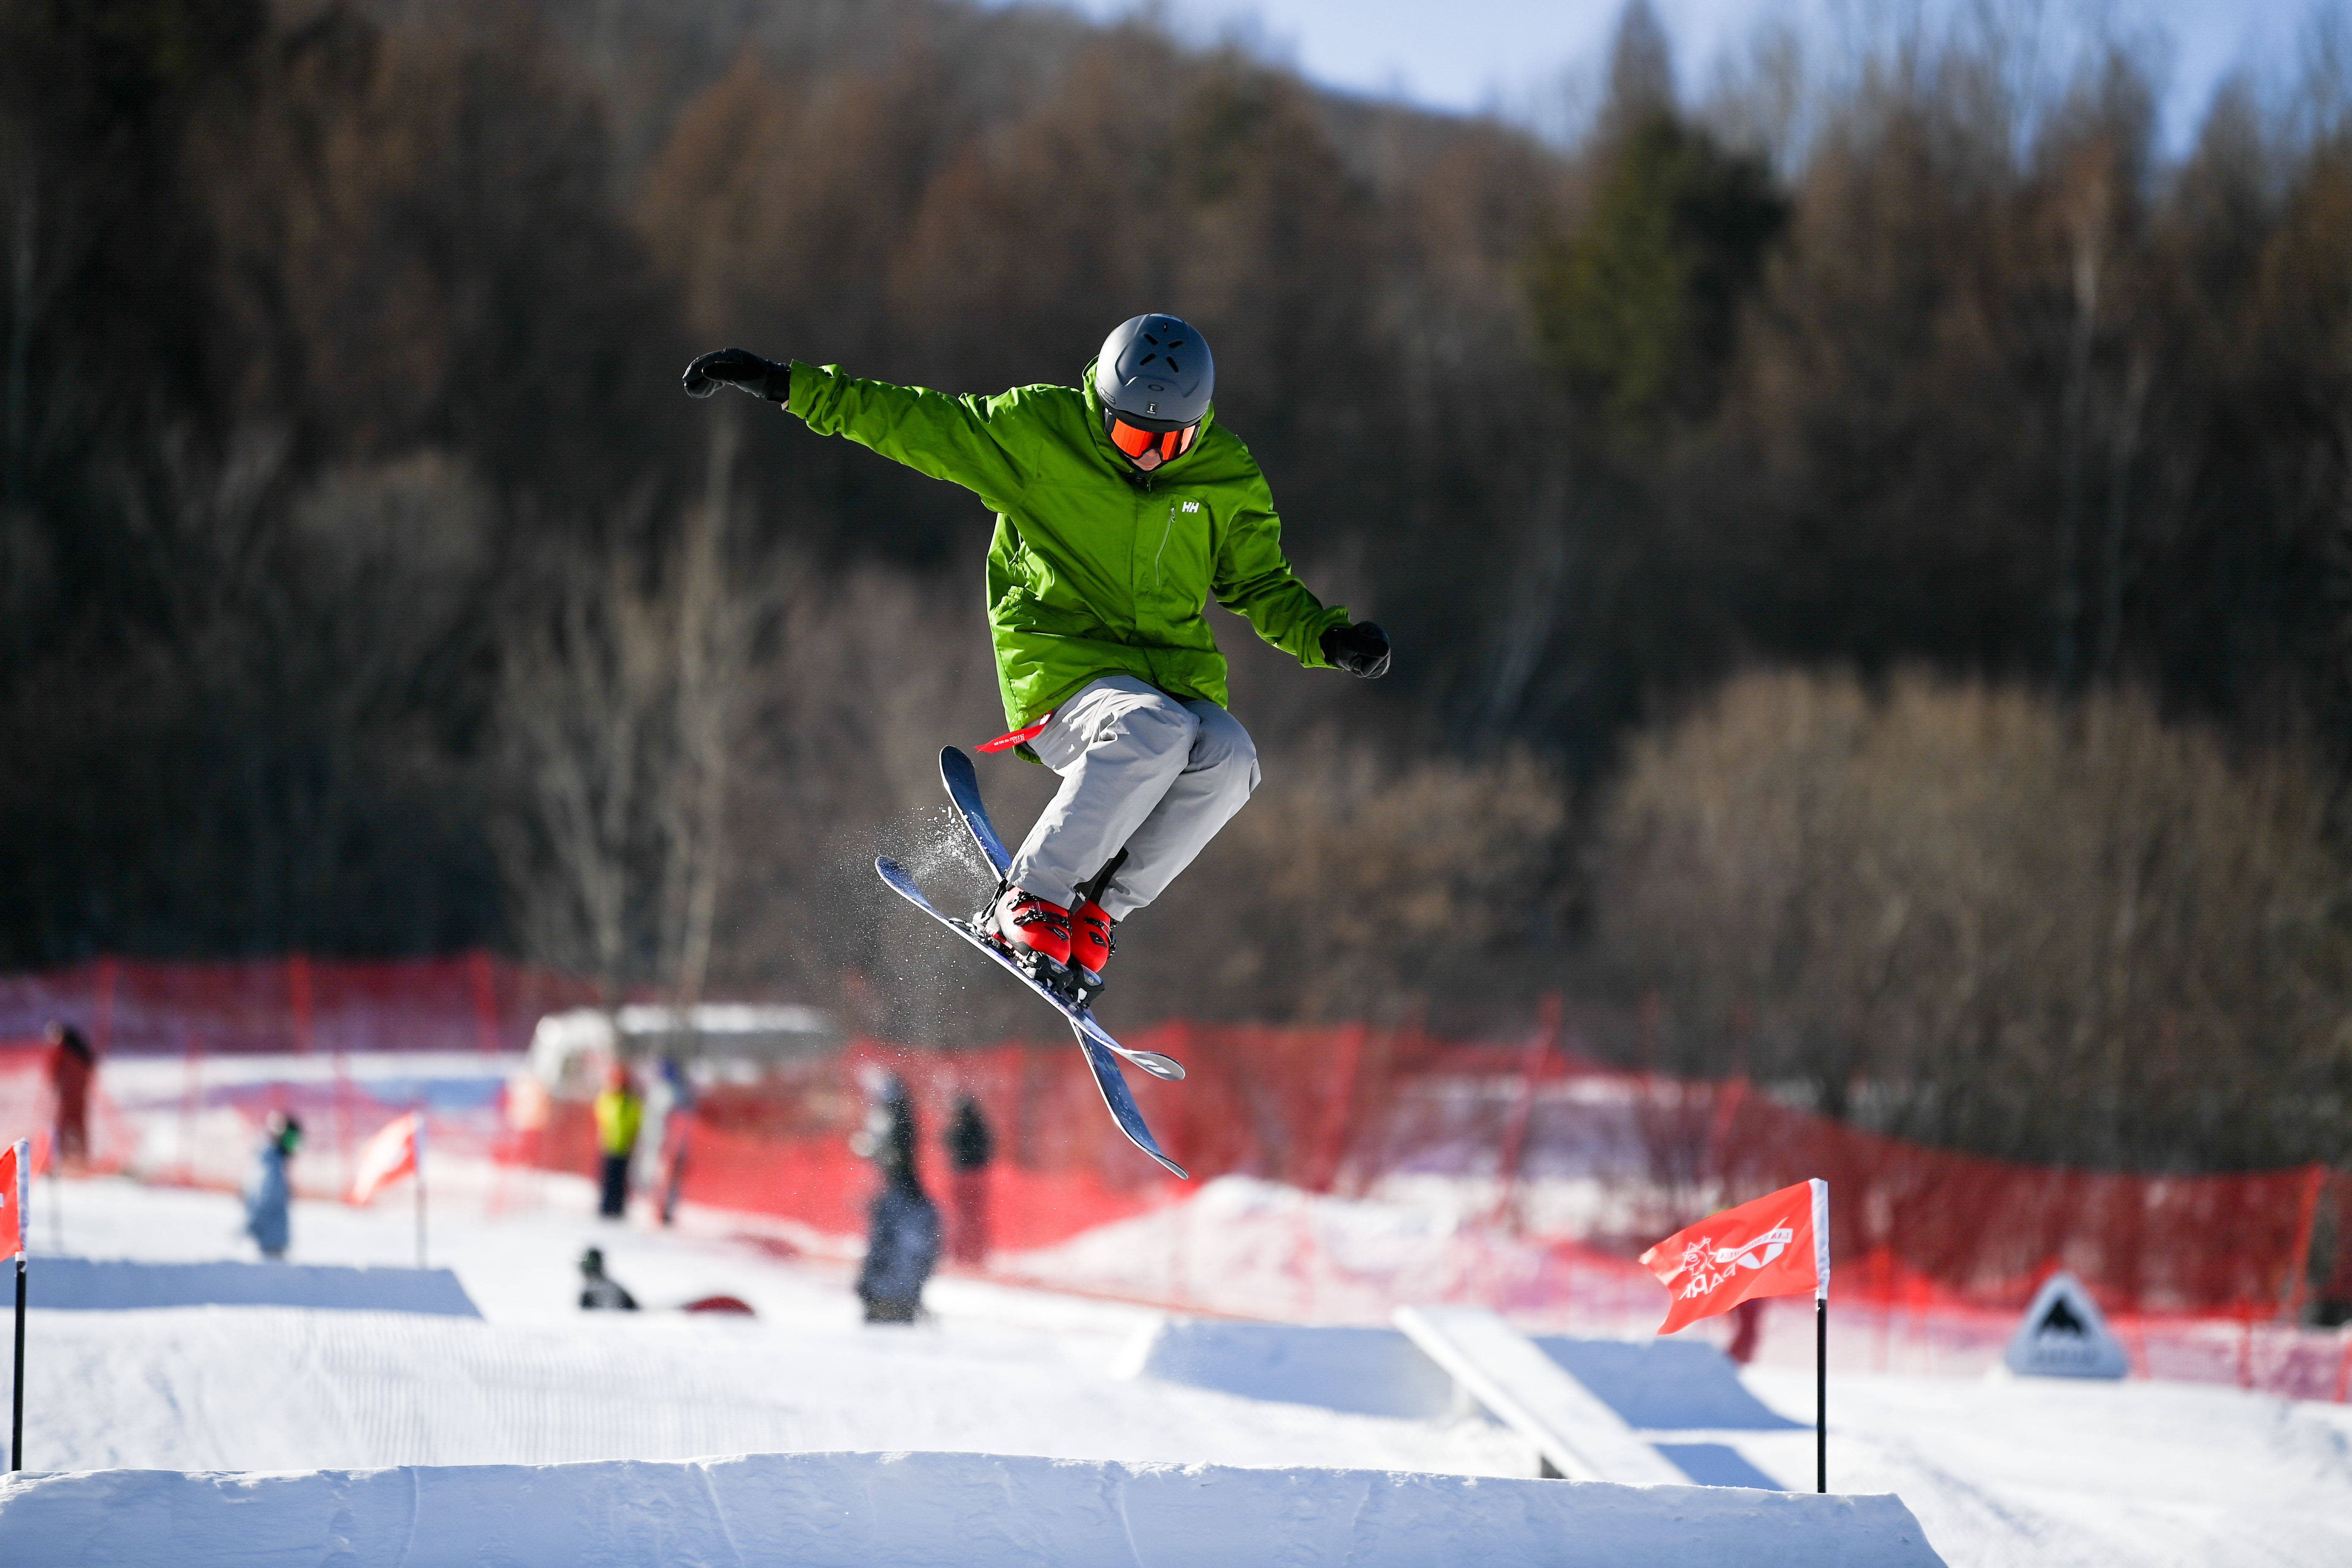 2月3日,游客在吉林市万科松花湖滑雪场滑雪